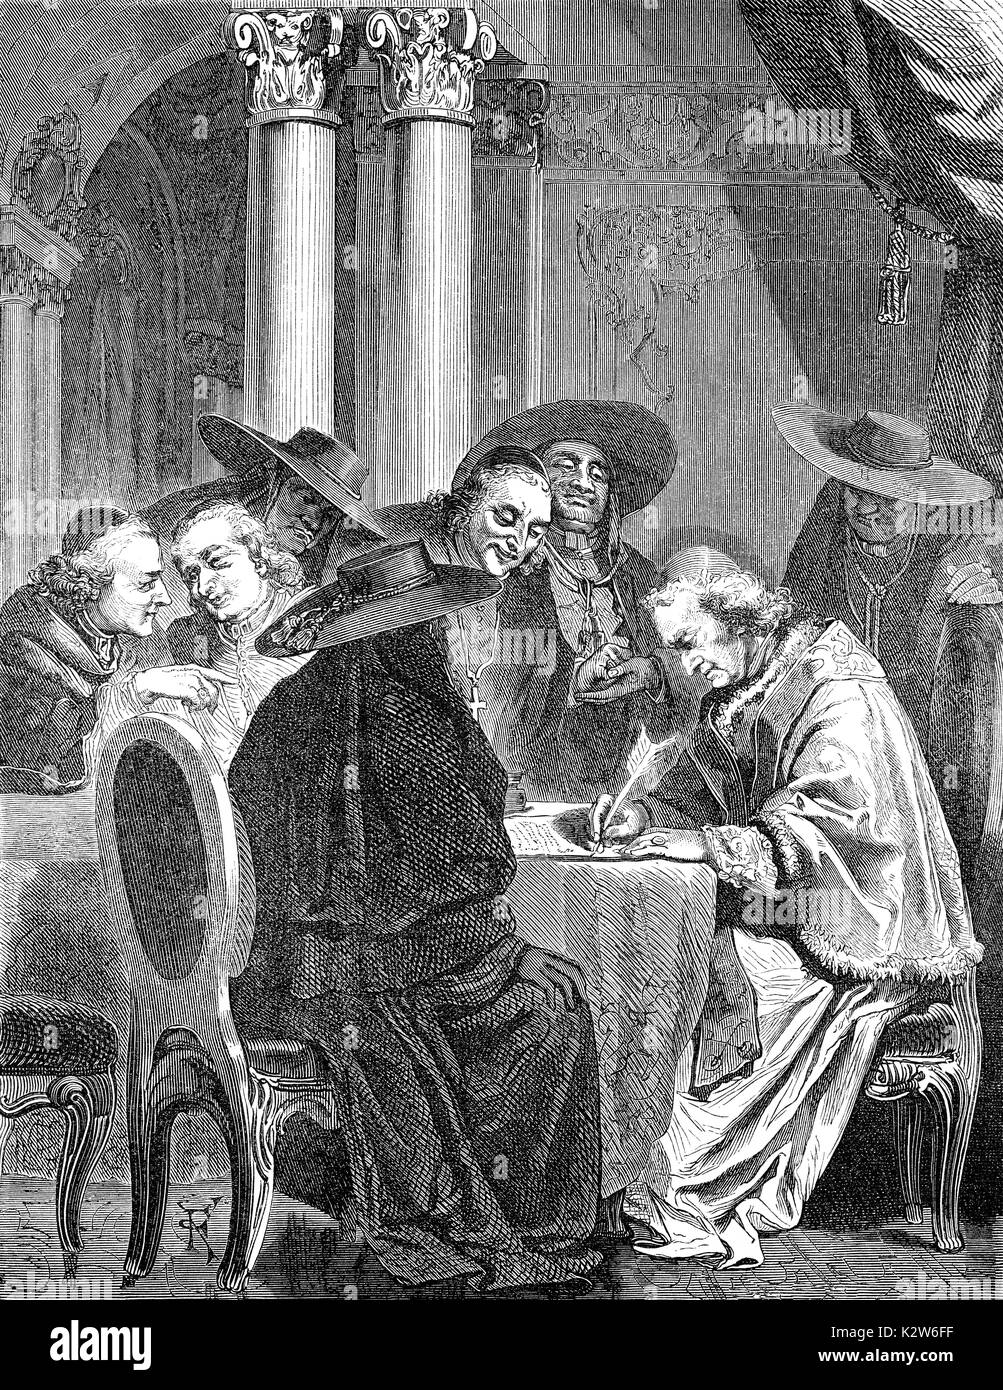 Papst Clemens XIV. unterdrückt die Gesellschaft Jesu durch die Unterzeichnung des Päpstlichen kurze Dominus ac Redemptor am 21. Juli 1773 Stockfoto